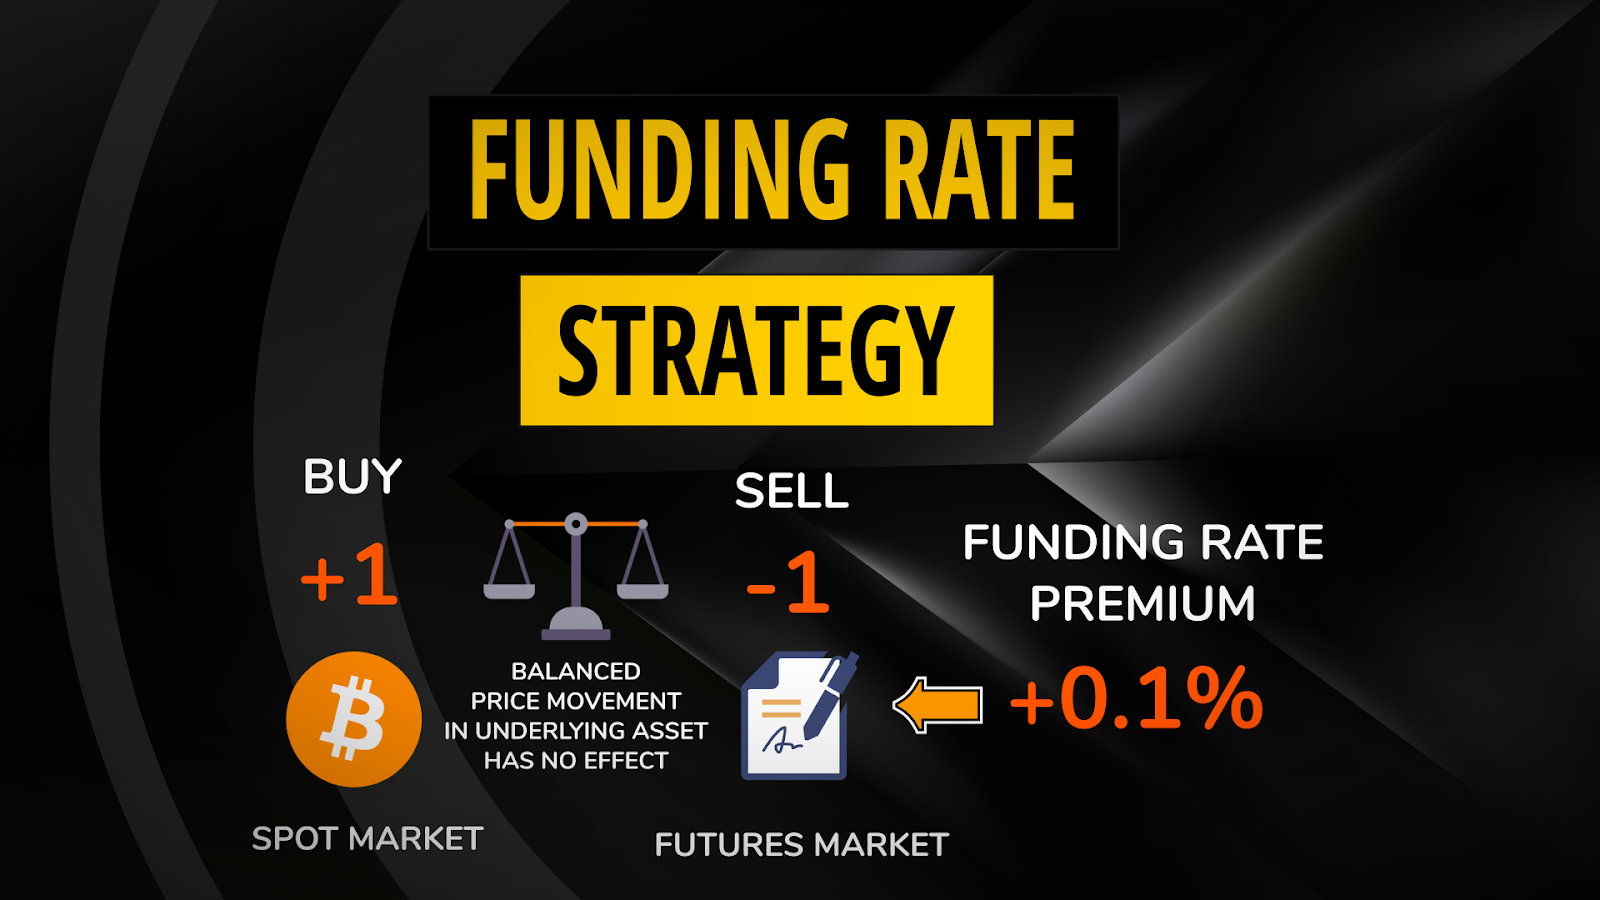 chiến lược kiếm lợi nhuận từ funding rate